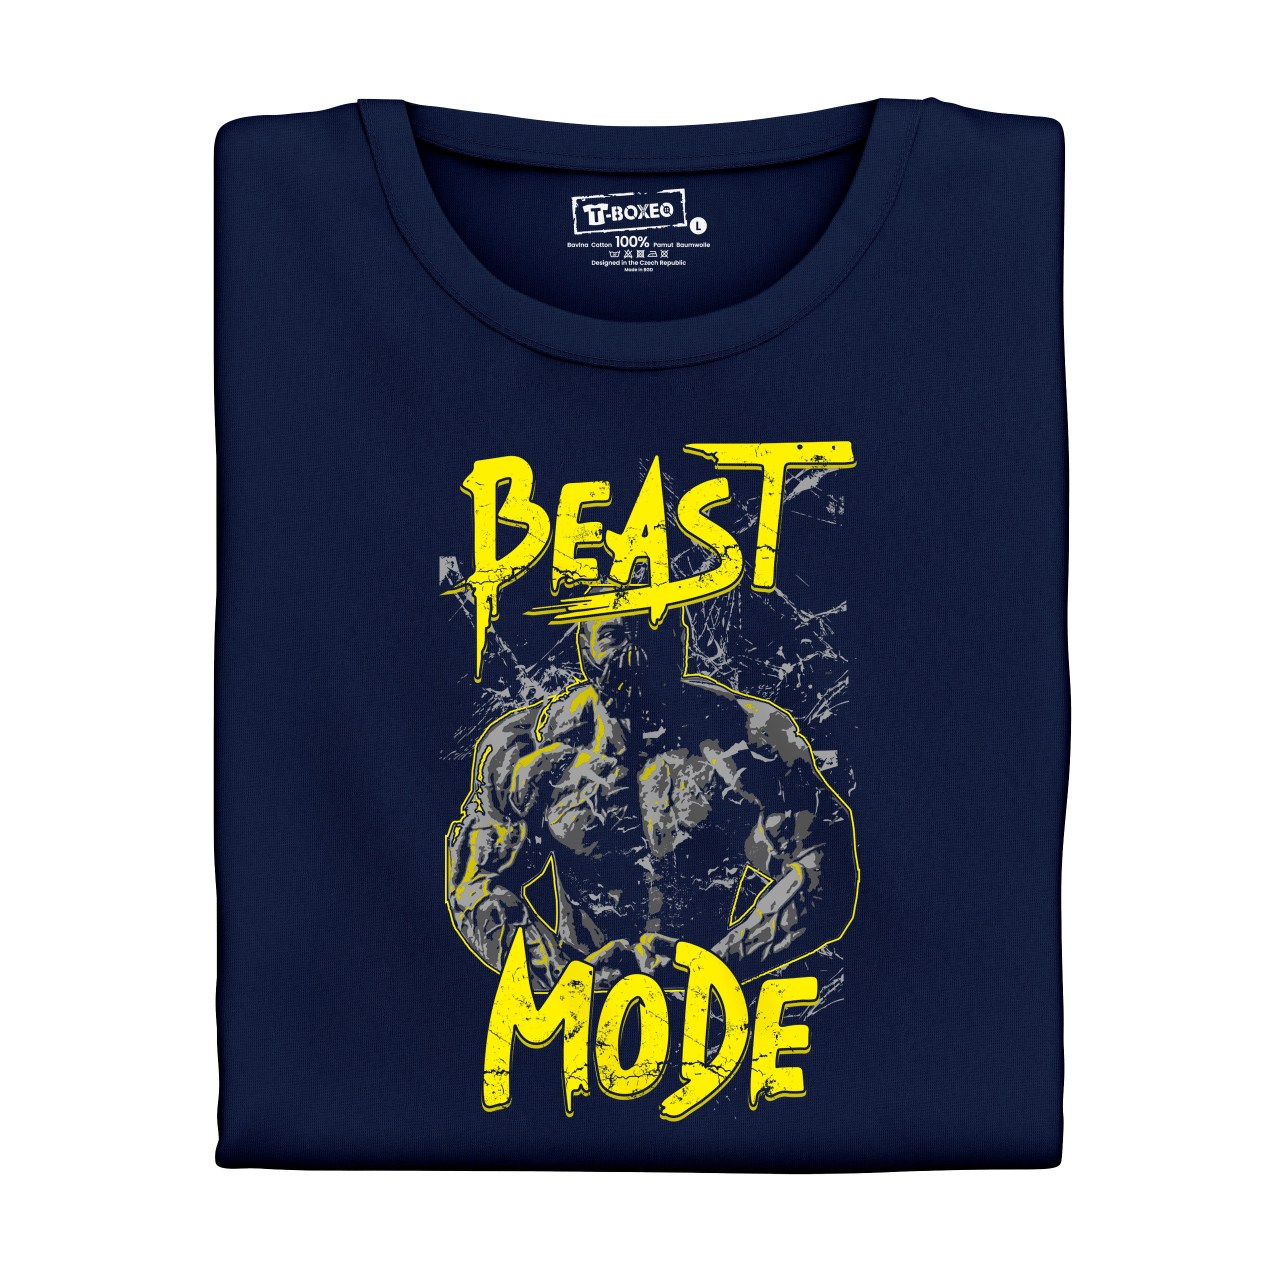 Pánské tričko s potiskem “Beast Mode”